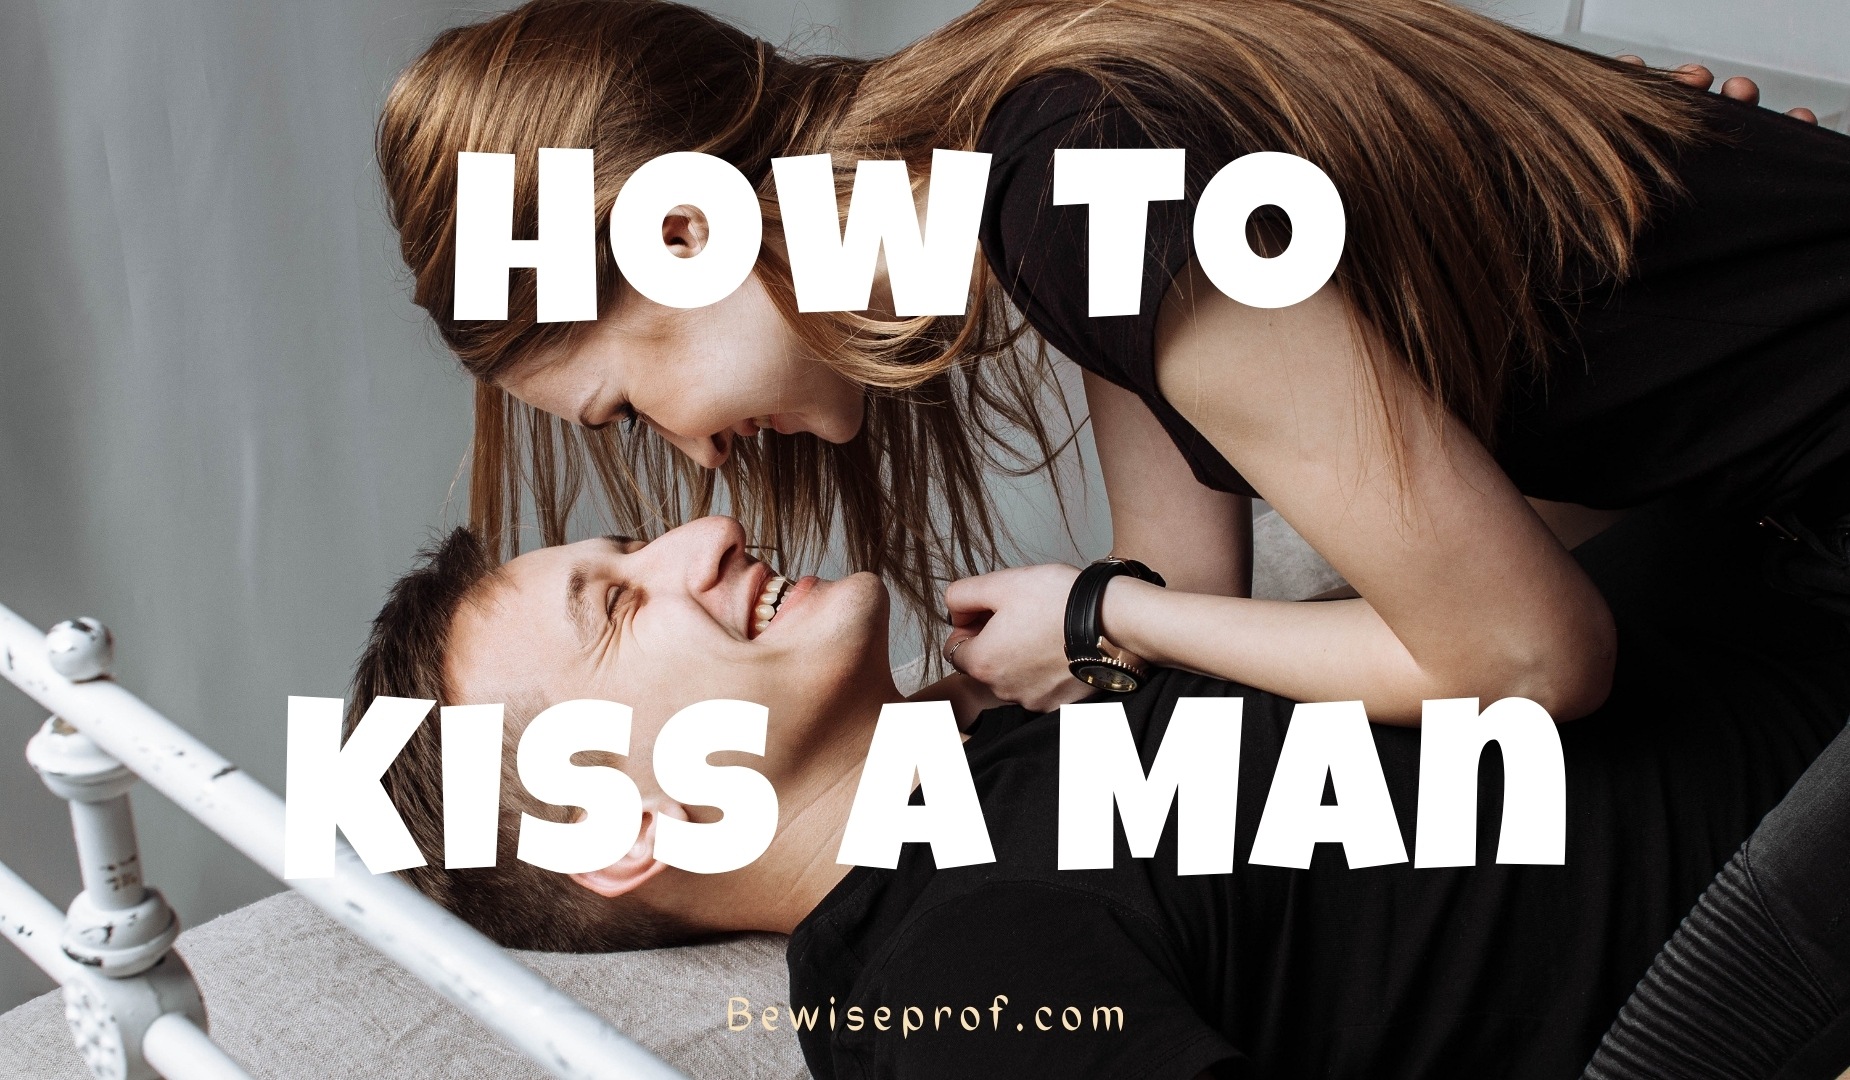 поцелуй девушки с девушкой считается изменой фото 51